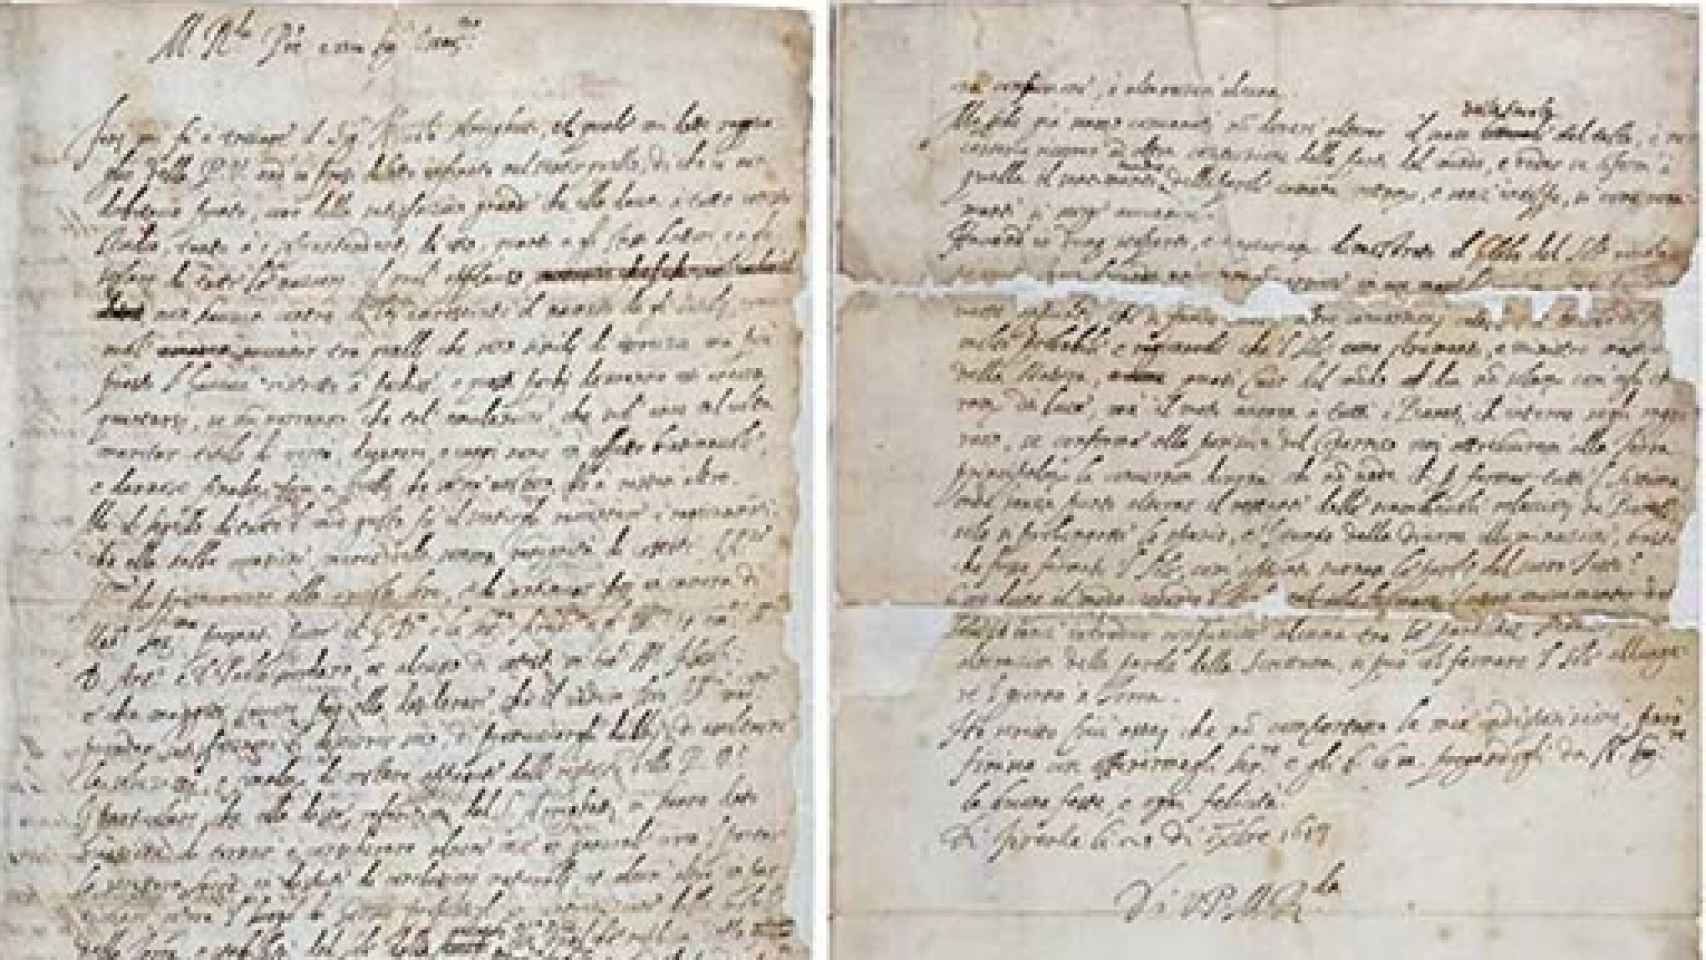 Image: Hallada la carta que convirtió a Galileo en hereje